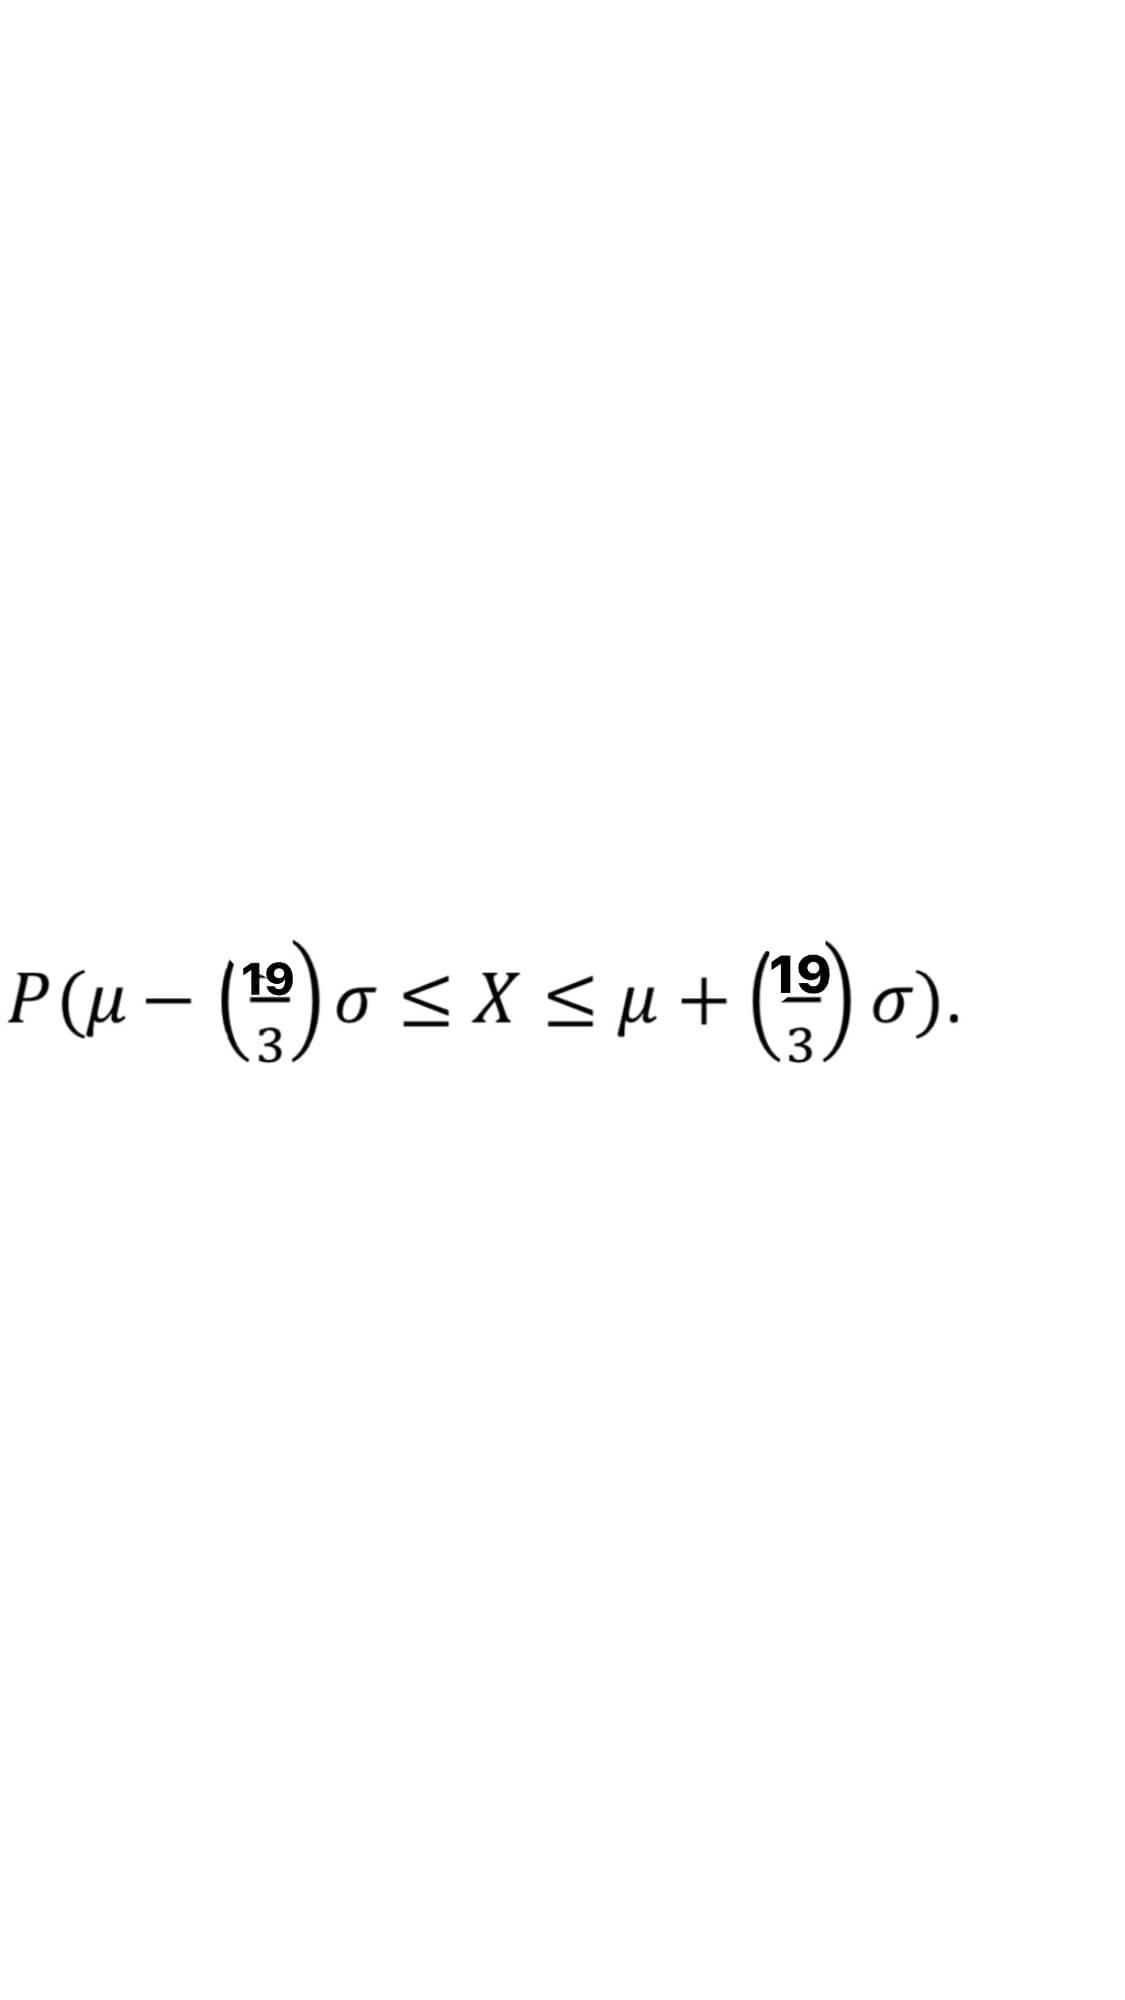 Ρμ- (9)σ <X < μ + (9) σ .
3
.3
